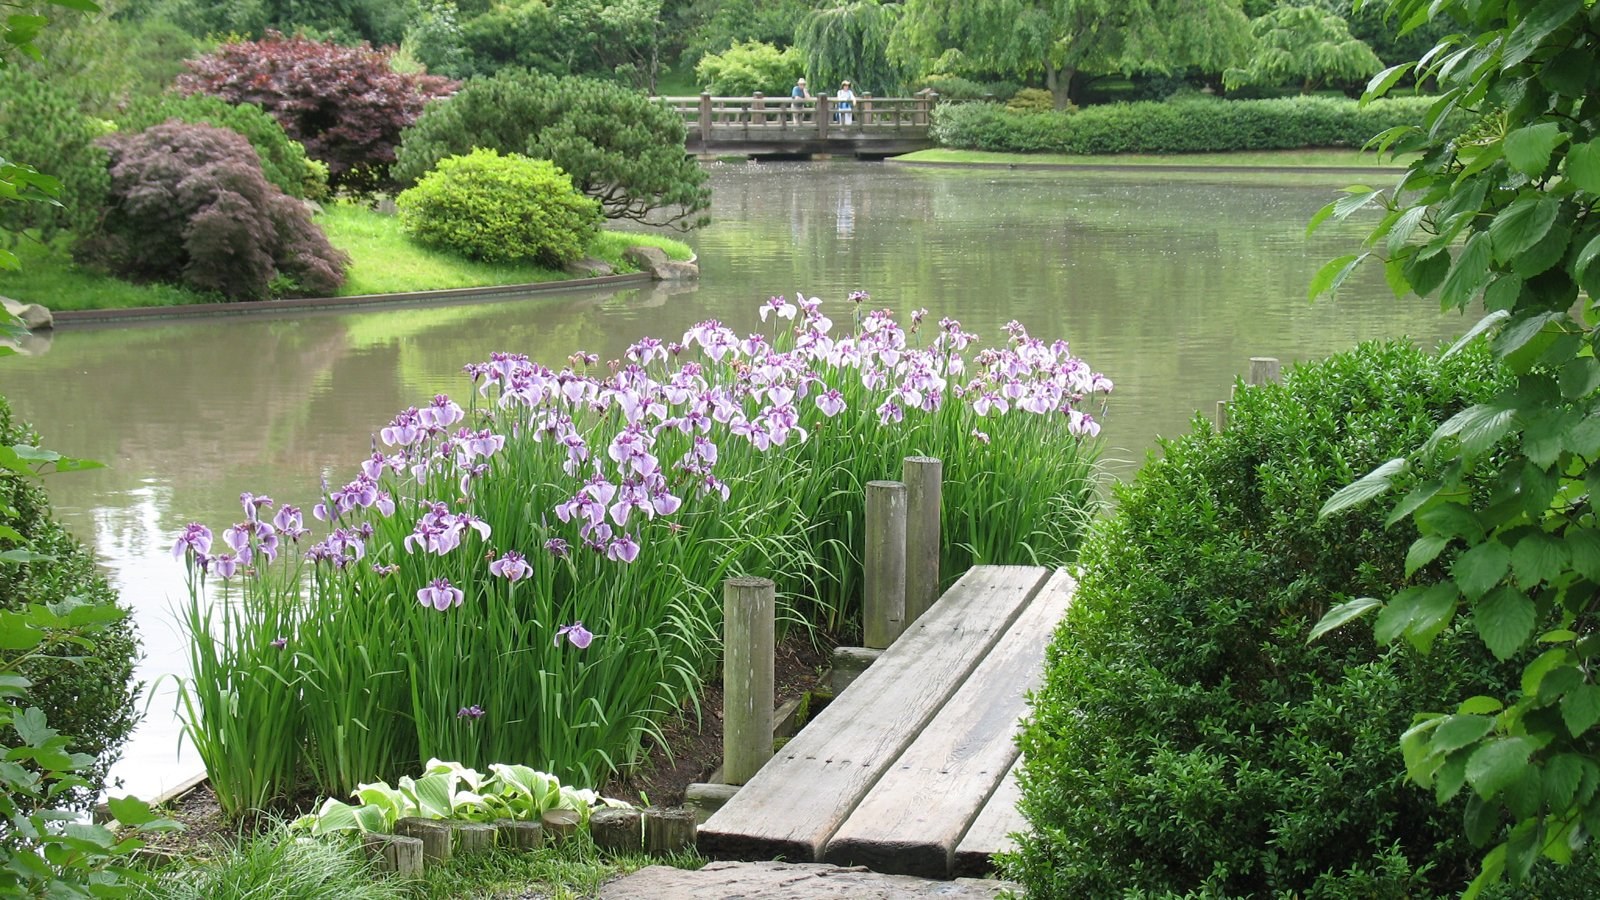 Цветочный пруд 22. Водный сад ирисов Савара Япония. Суйго Савара: Водный сад ирисов в Японии. Ирис болотный Касатик в водоеме. Сад Трокадеро пруд.